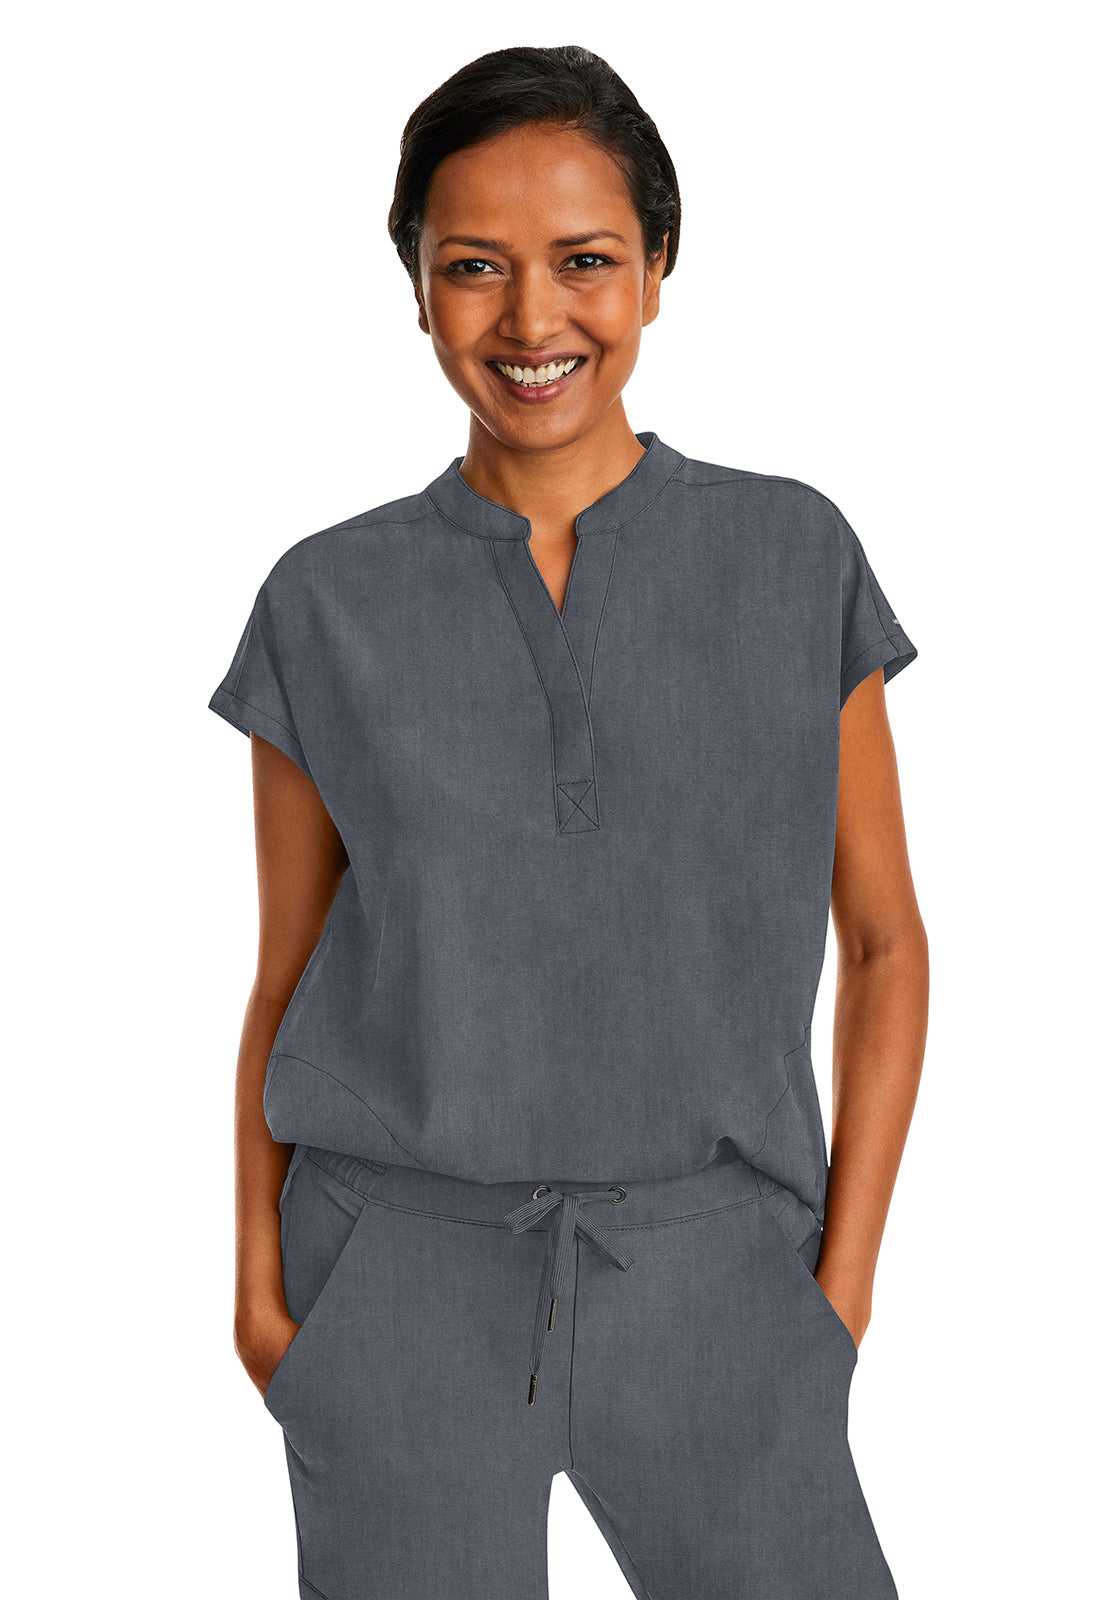 Heather Grey, medical scrubs Canada, quality medical uniforms Canada